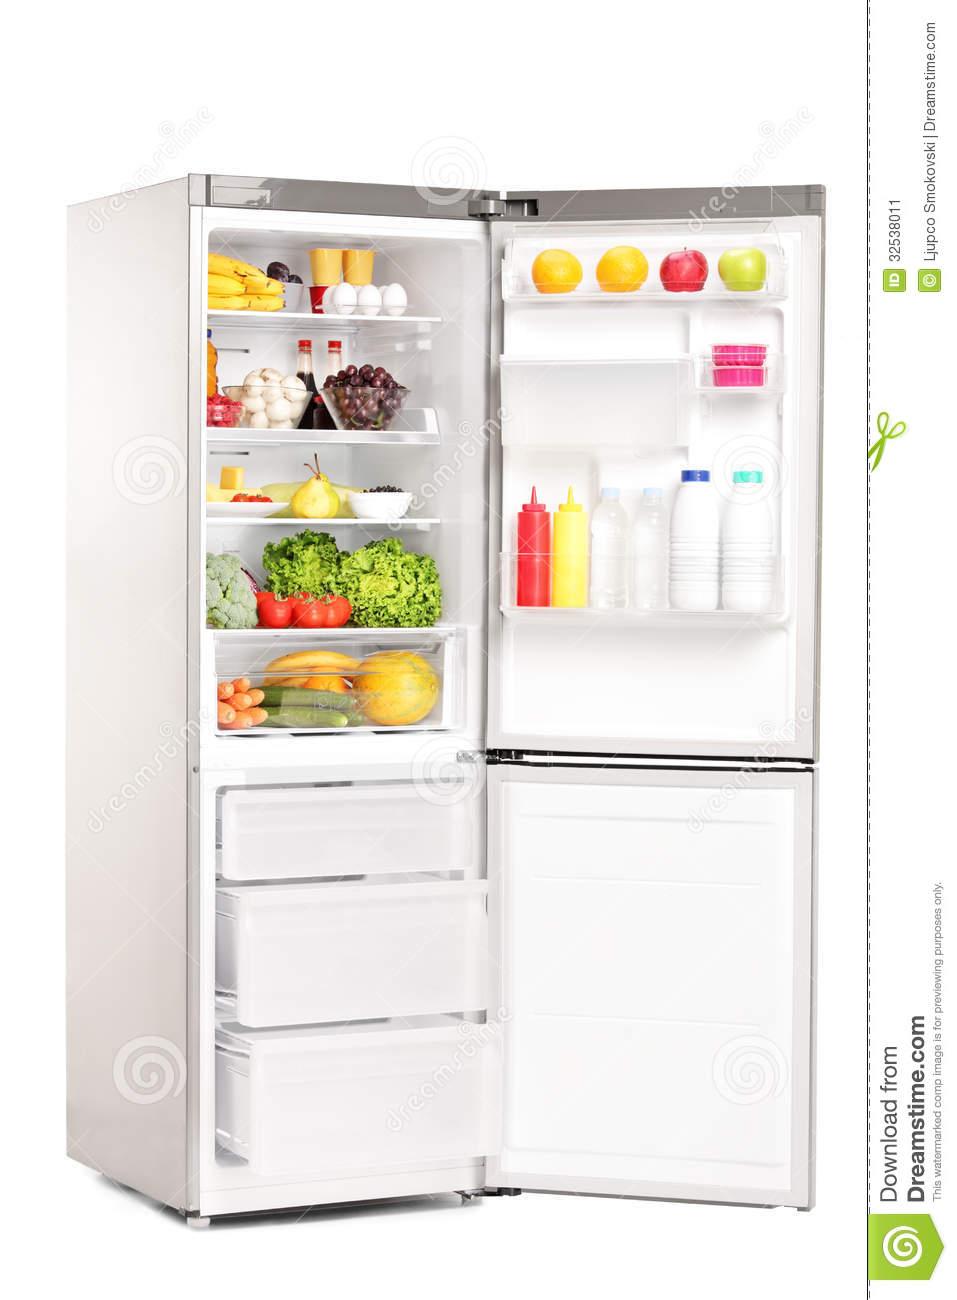 Teste conceitual Numa cozinha termicamente isolada, uma geladeira comum é deixada funcionando de porta